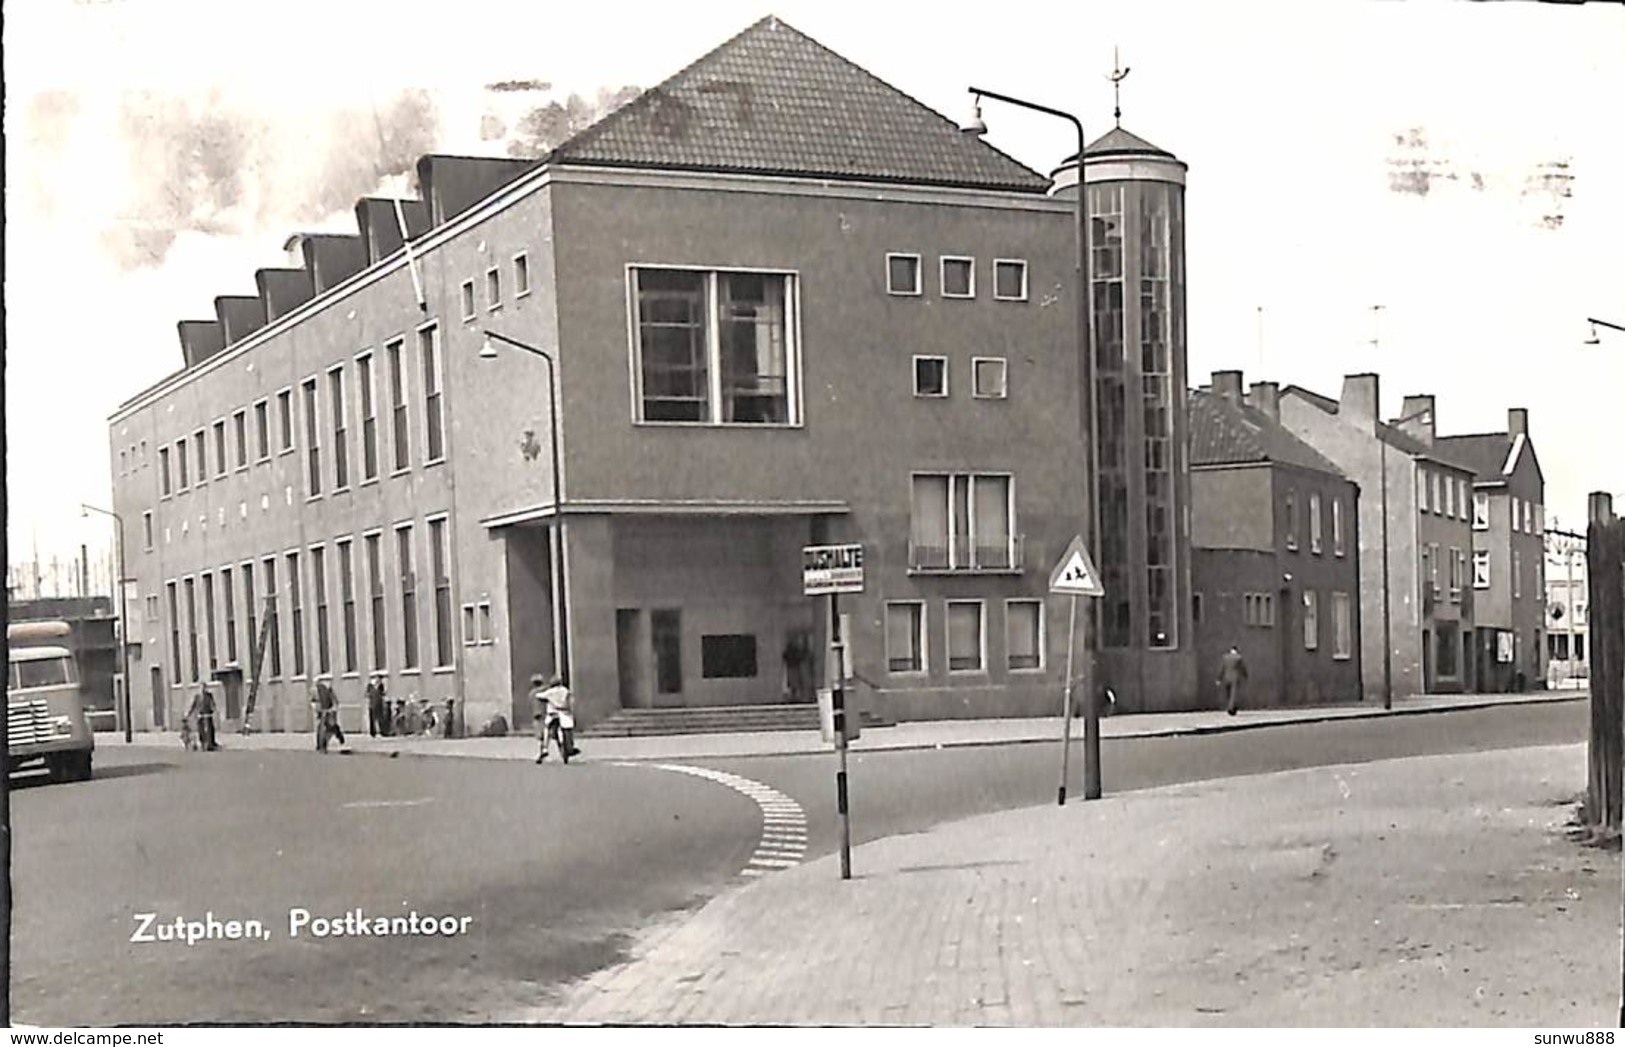 Zutphen - Postkantoor (1959)  Fixed Price - Zutphen